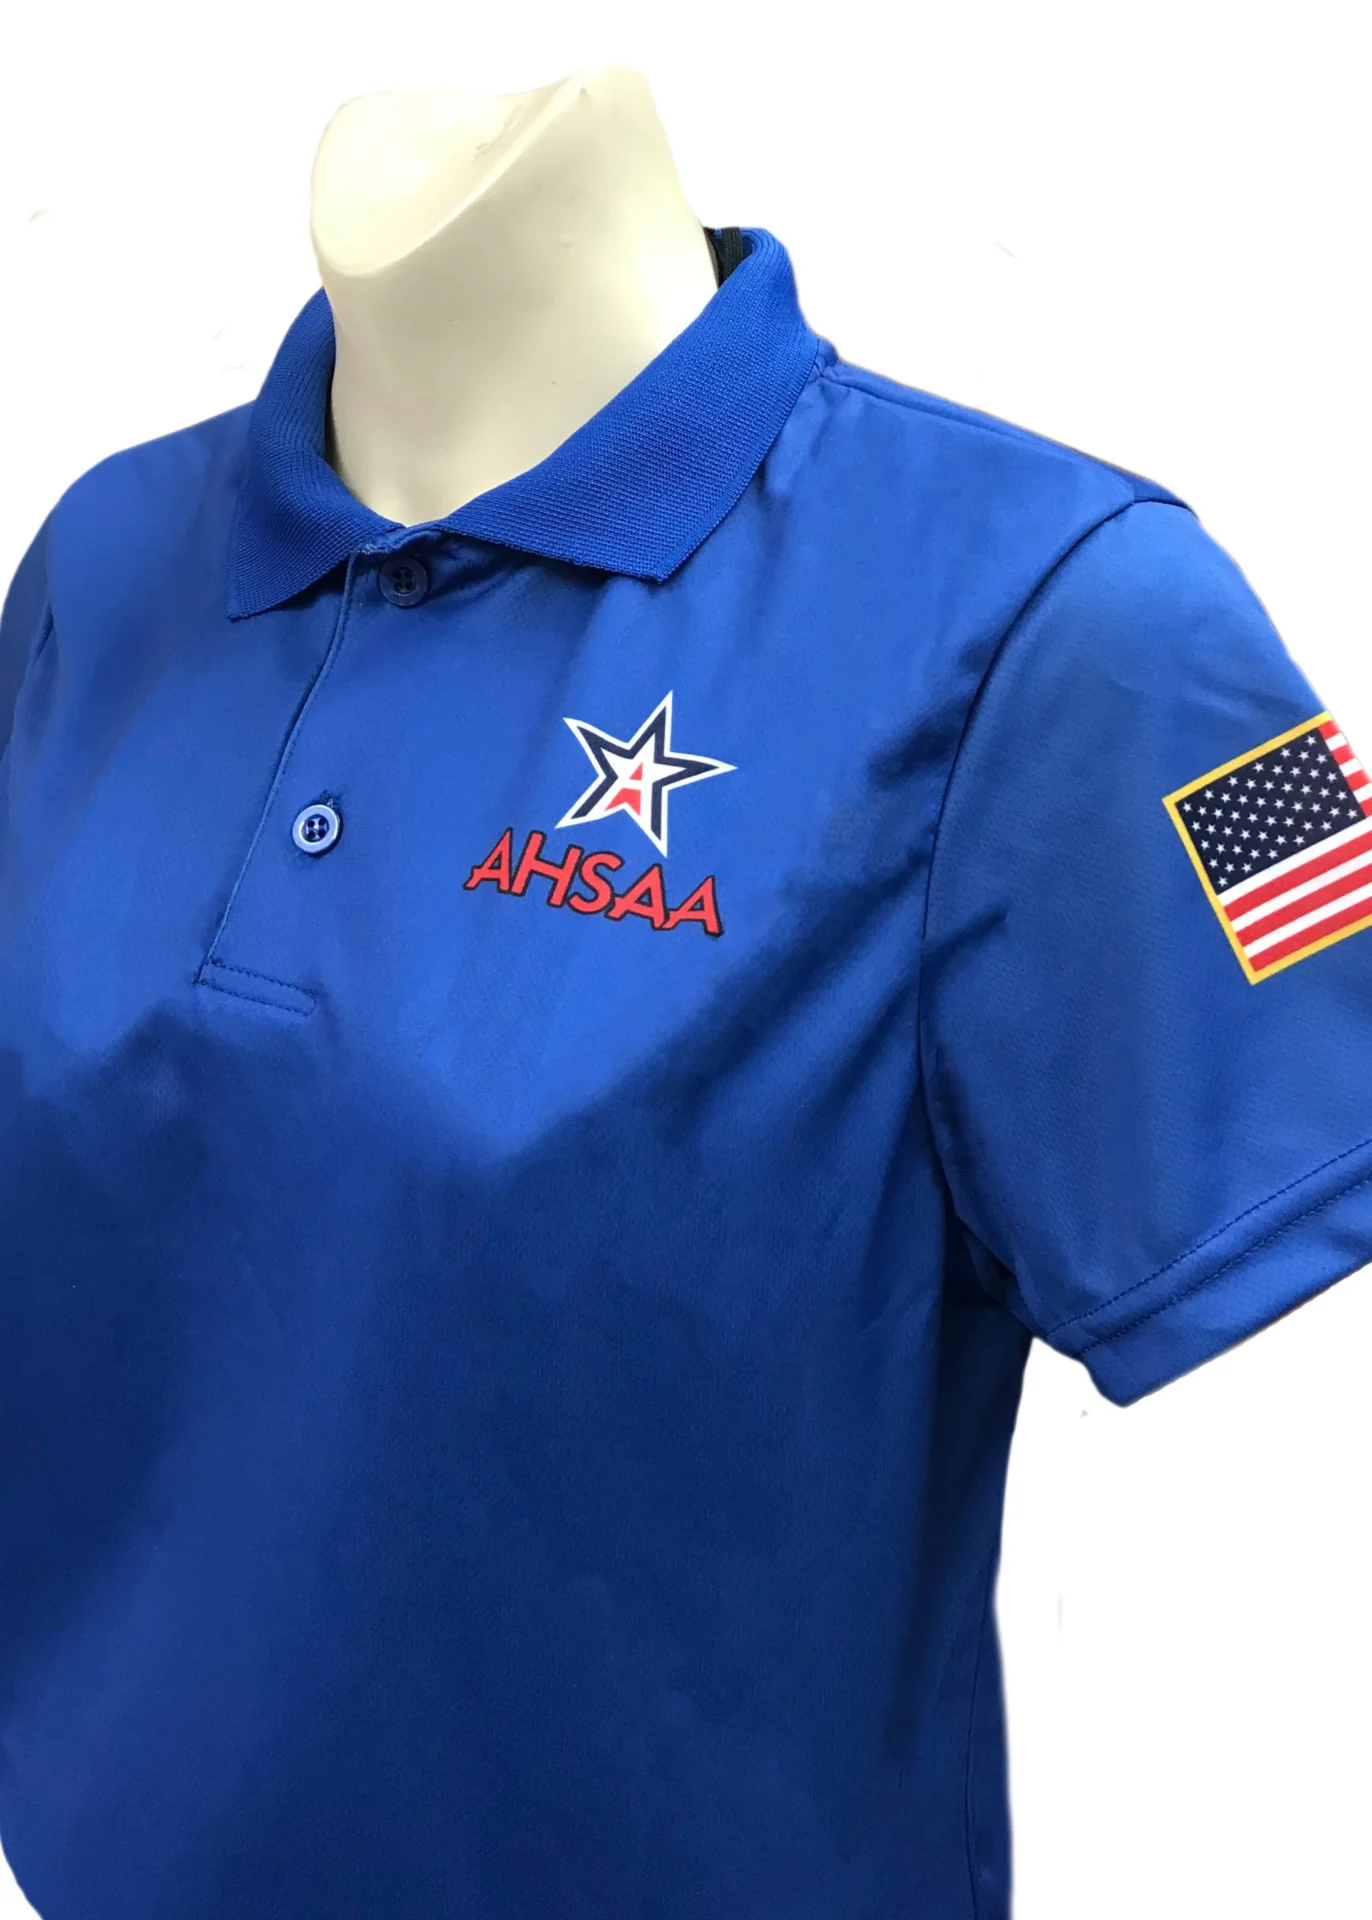 USA402 Alabama Volleyball Women's Short Sleeve Shirt